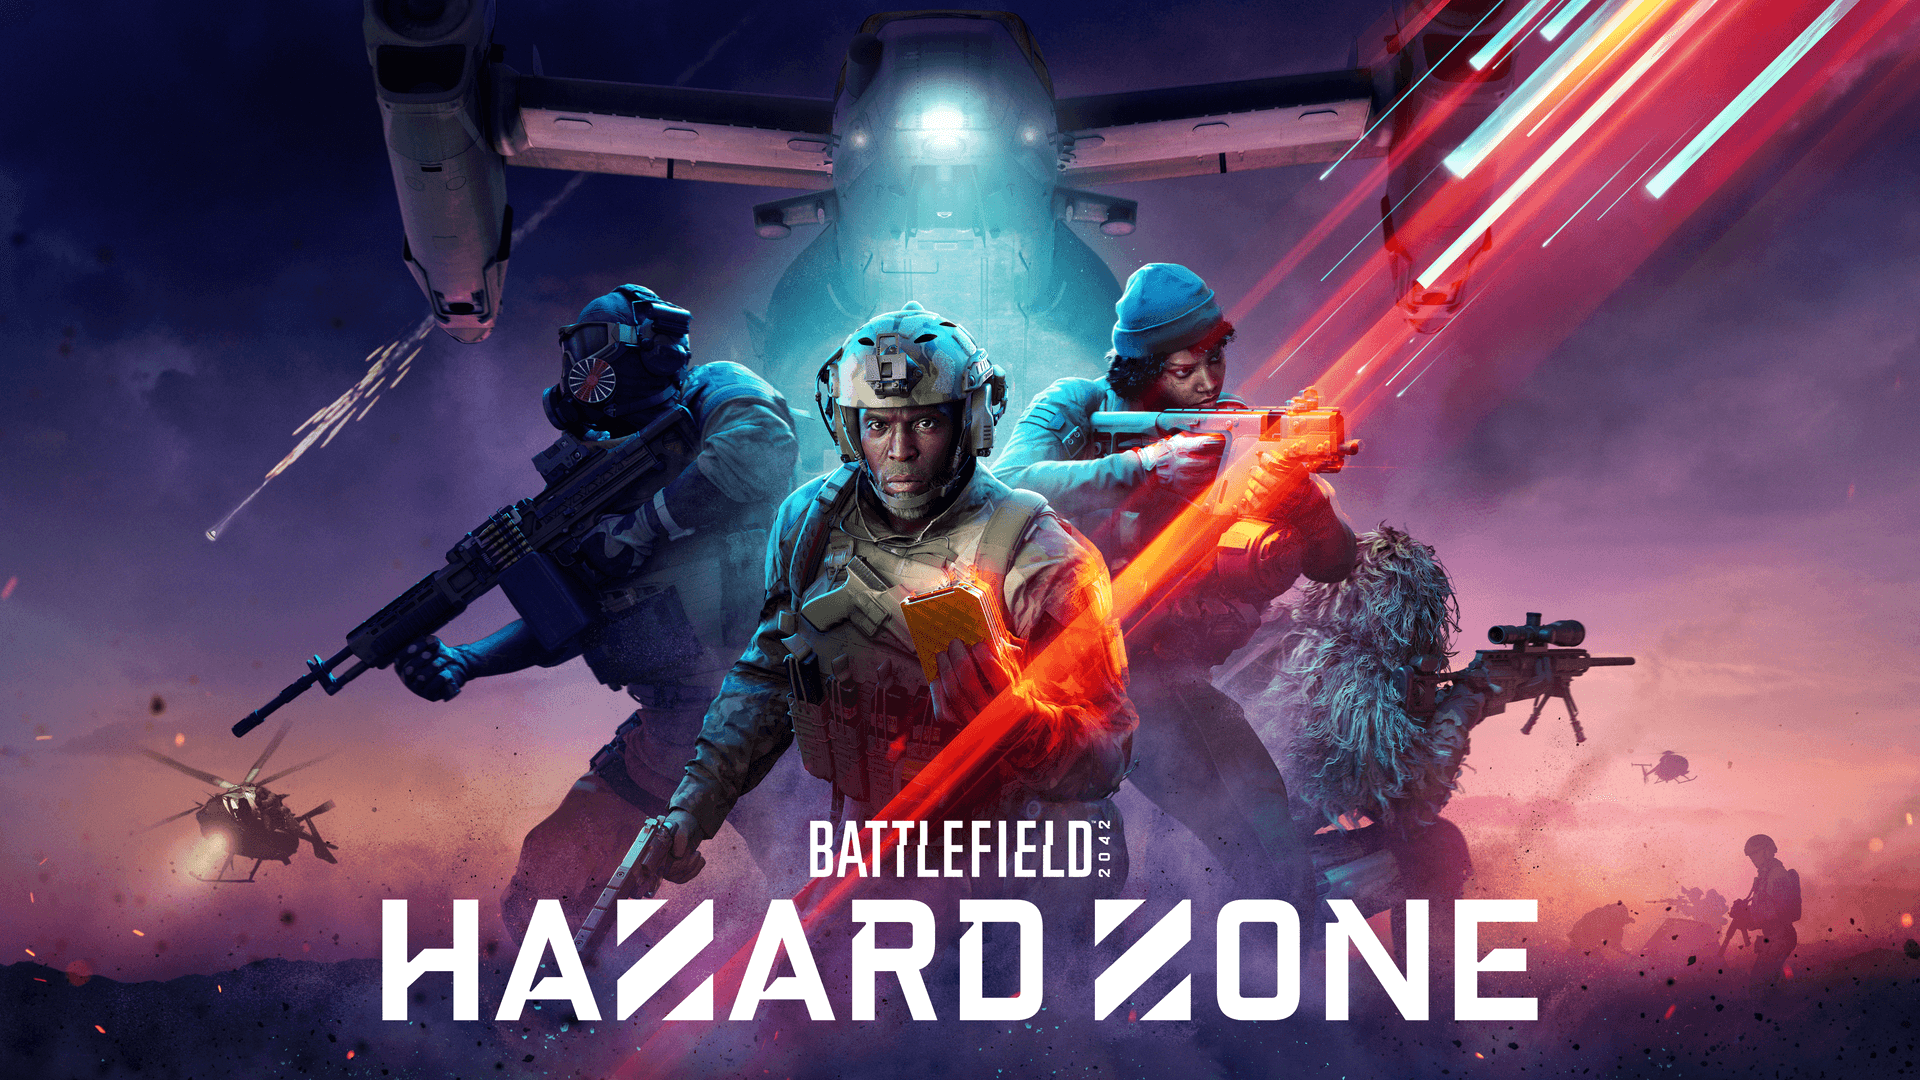 Date d'annonce de Battlefield 2042 Hazard Zone dans la bande-annonce !